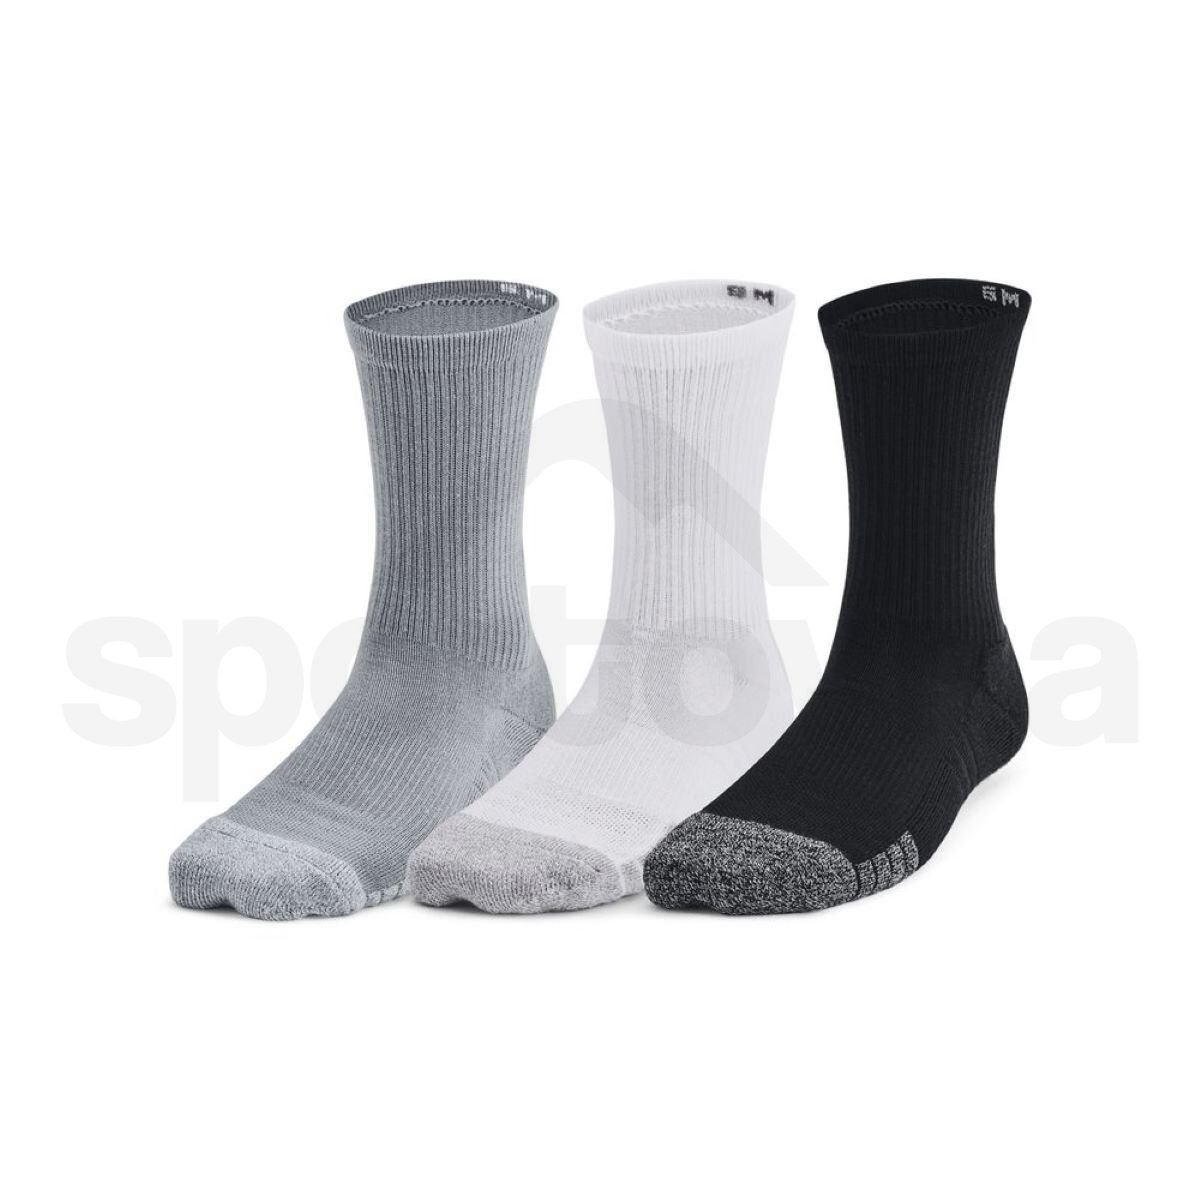 Ponožky Under Armour UA Heatgear 3pk Crew J - šedá/bílá/černá